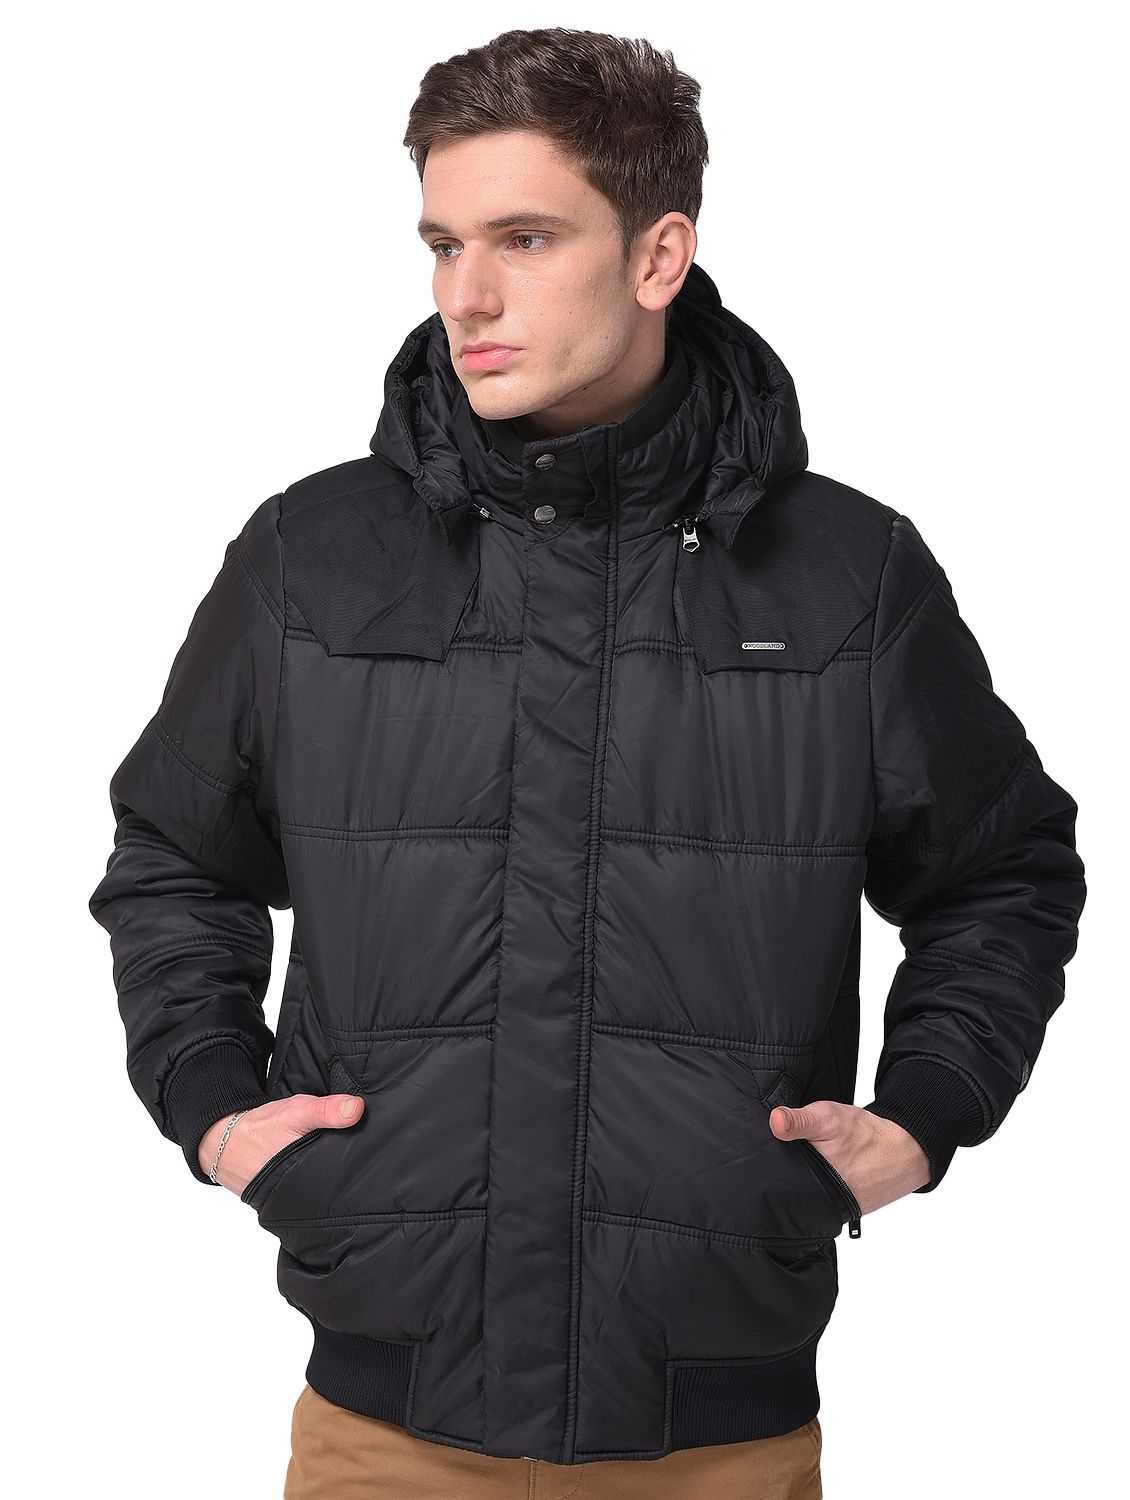 Black Quilted Jacket for men